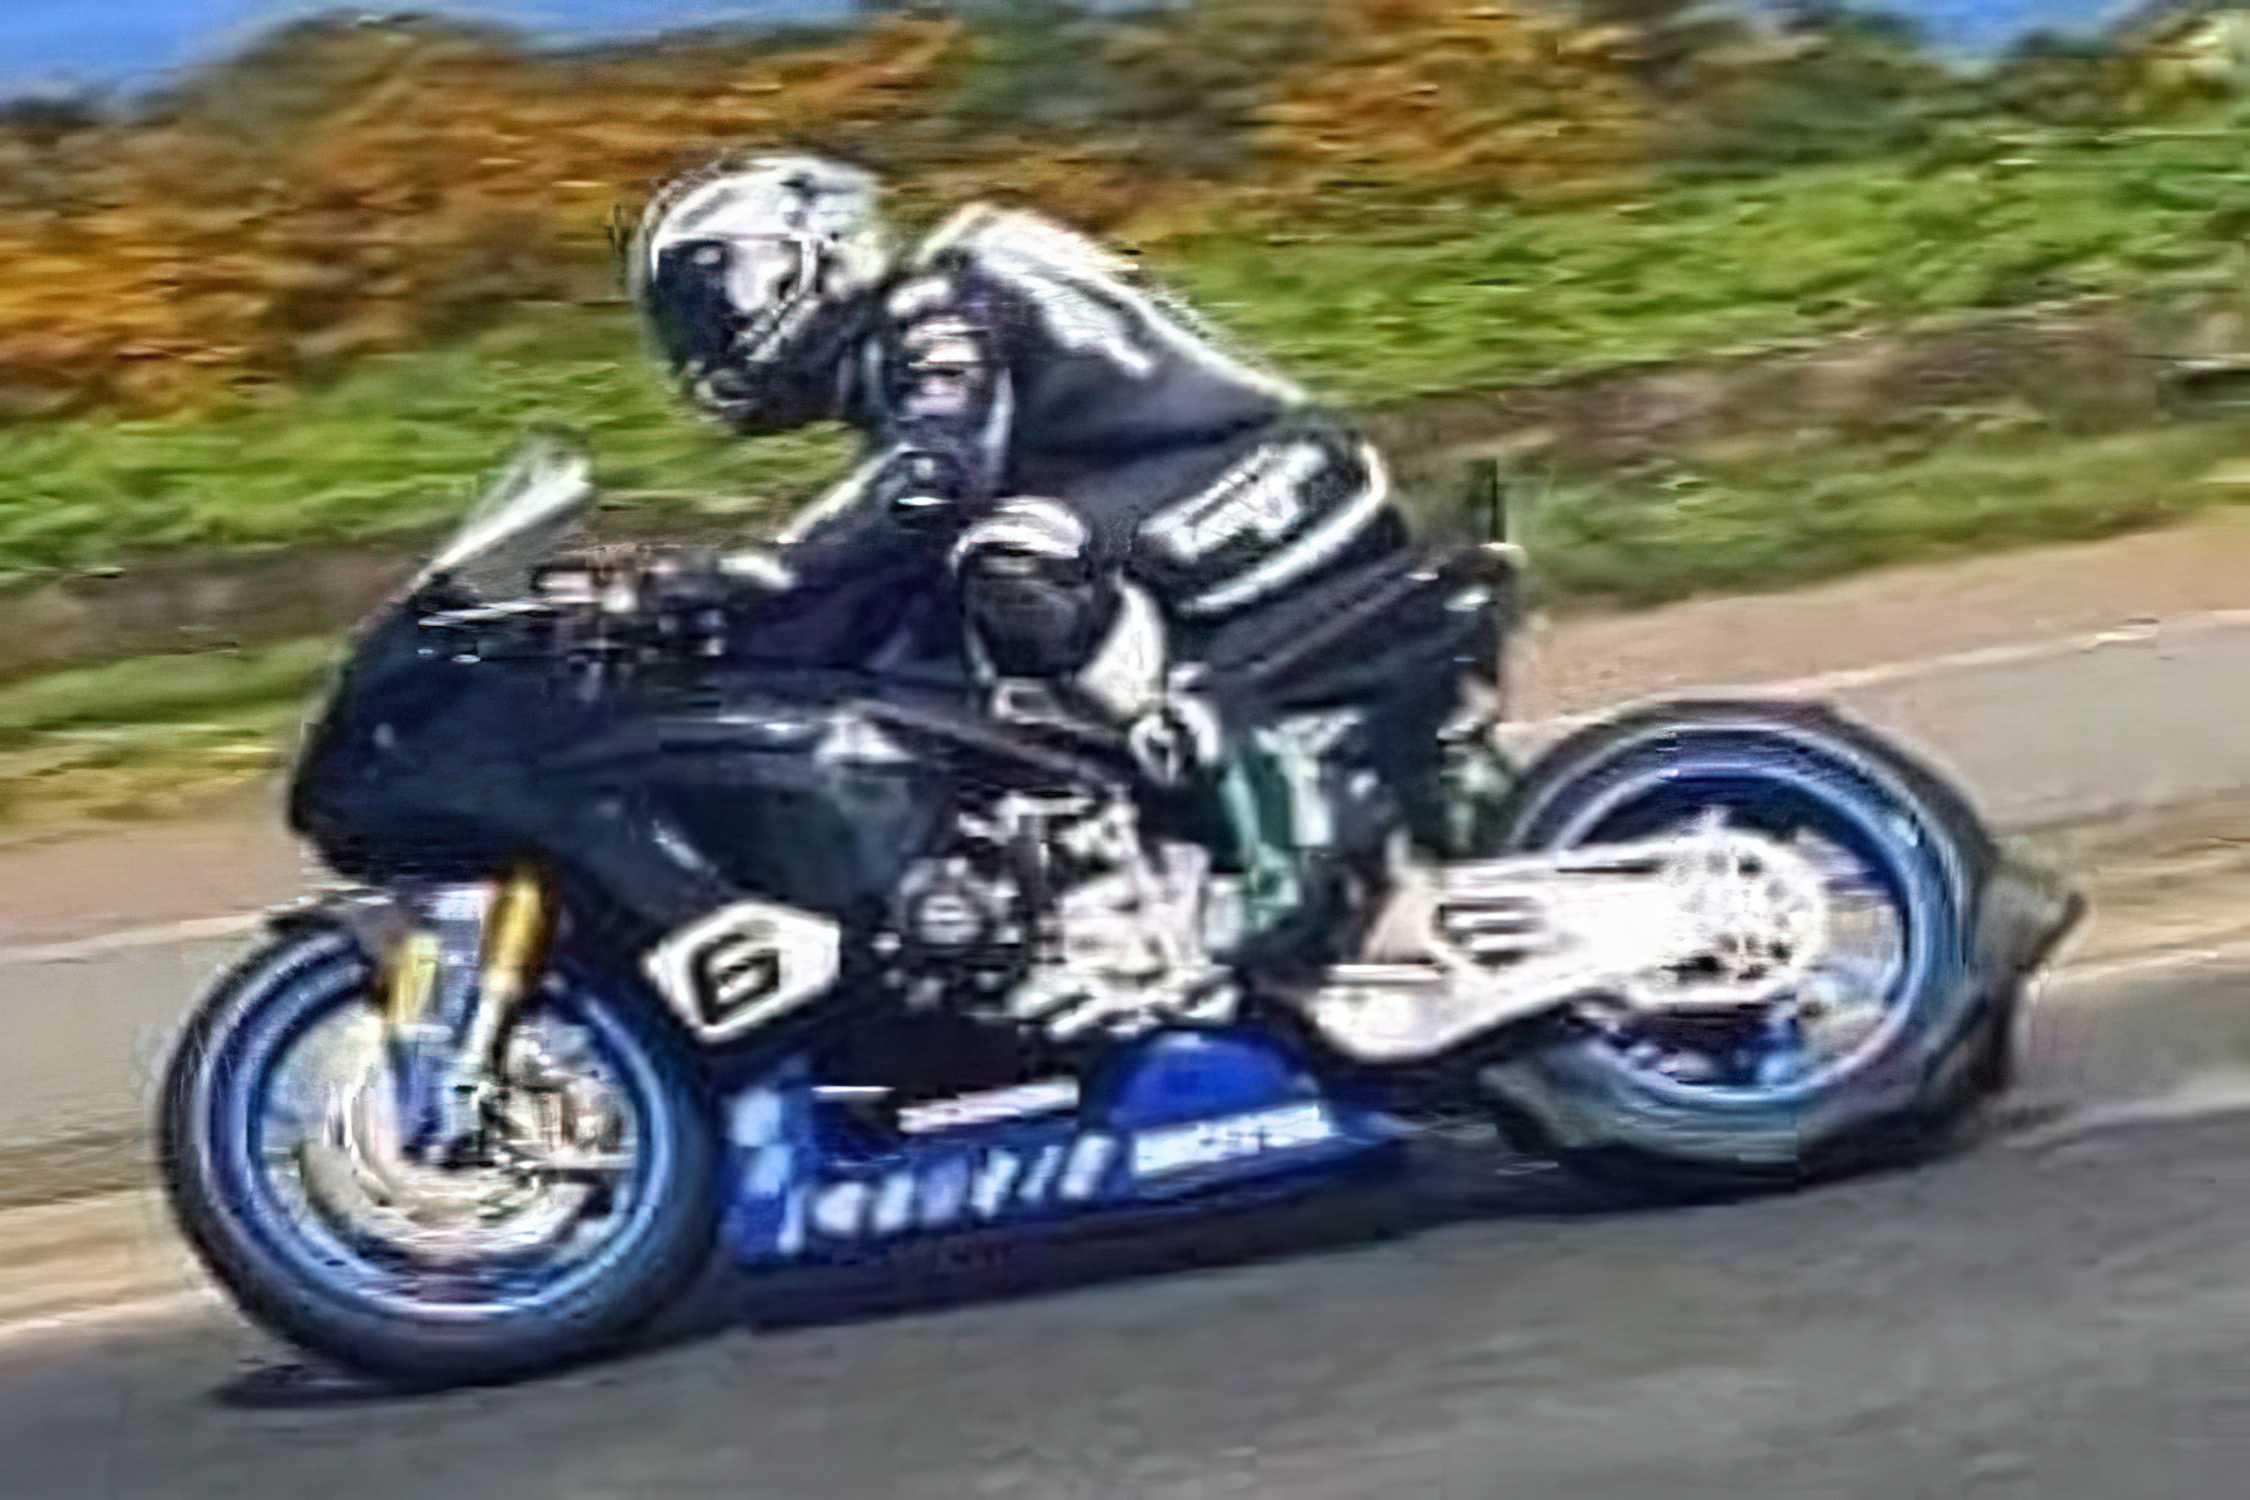 NW 200: Reifen von Michael Dunlop löst sich auf - MOTORCYCLES.NEWS